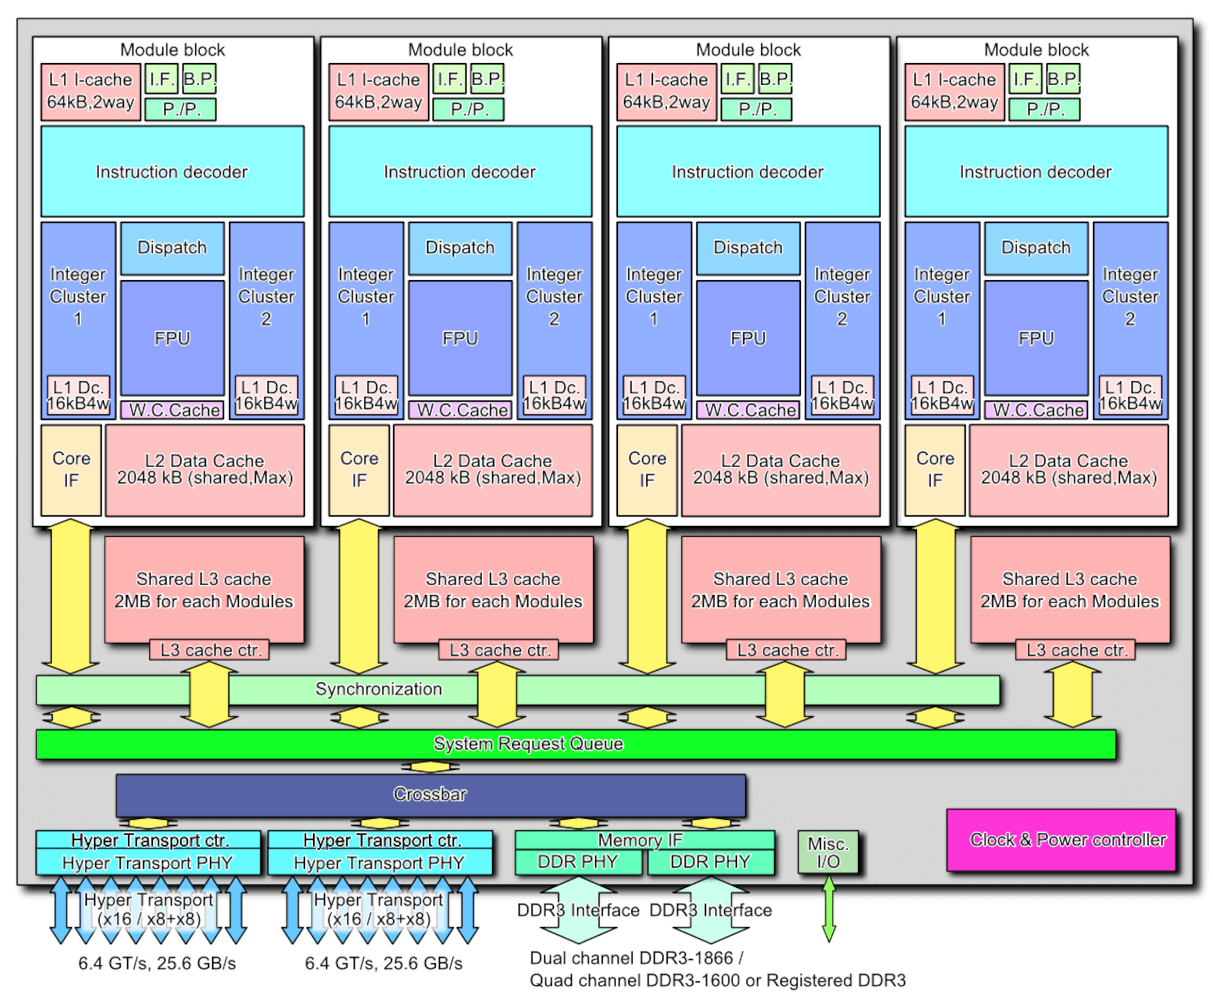 svg+xml,%3Csvg%20xmlns= Sự trỗi dậy, sụp đổ và hồi sinh của AMD